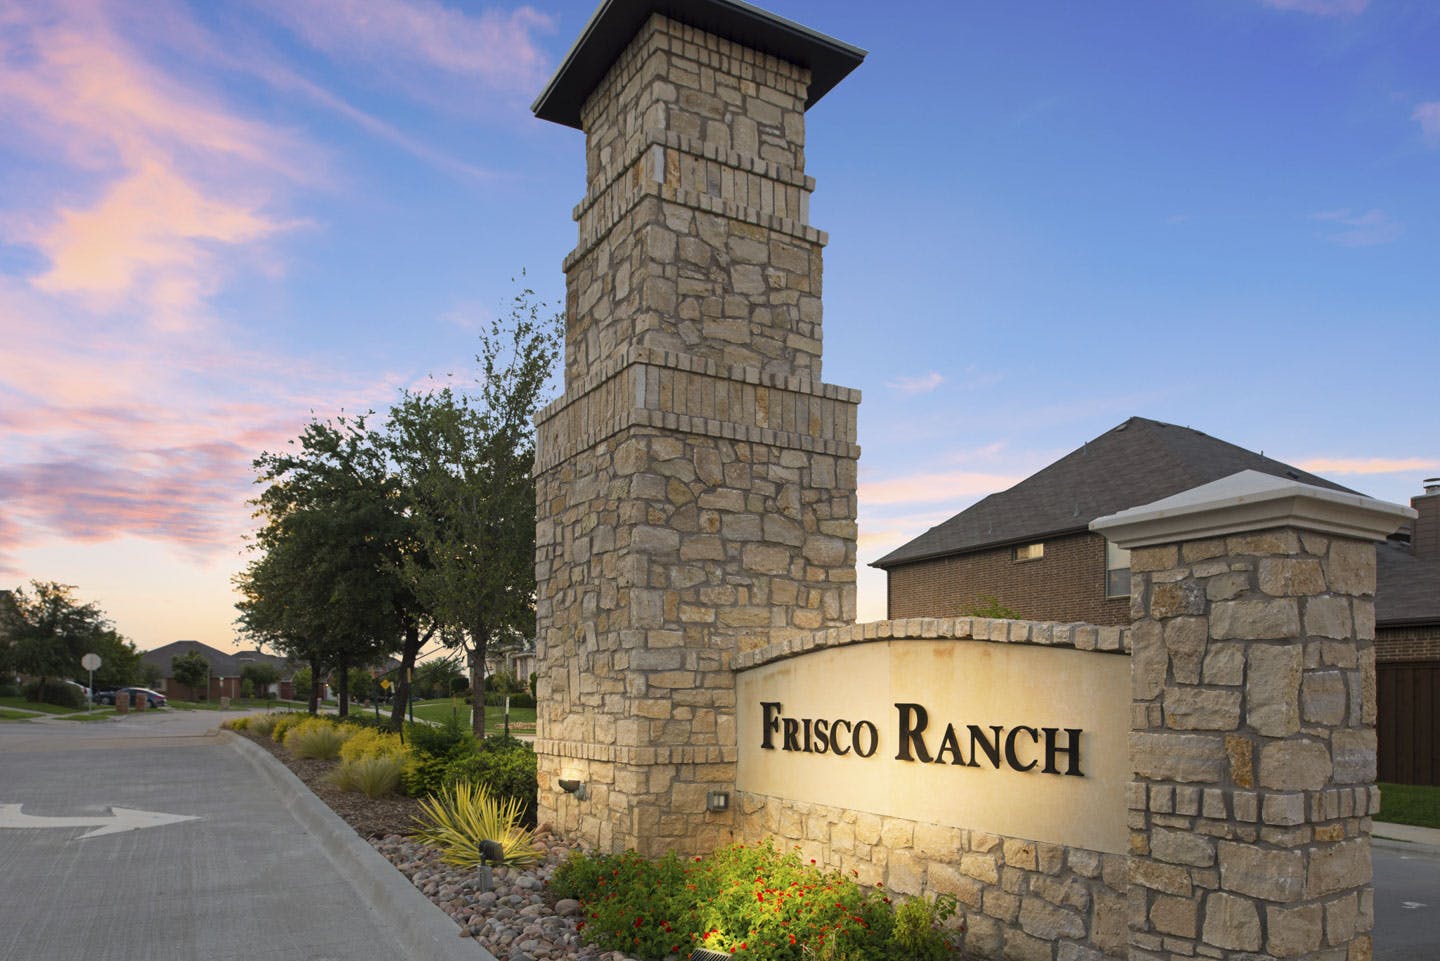 Frisco ranch Sign